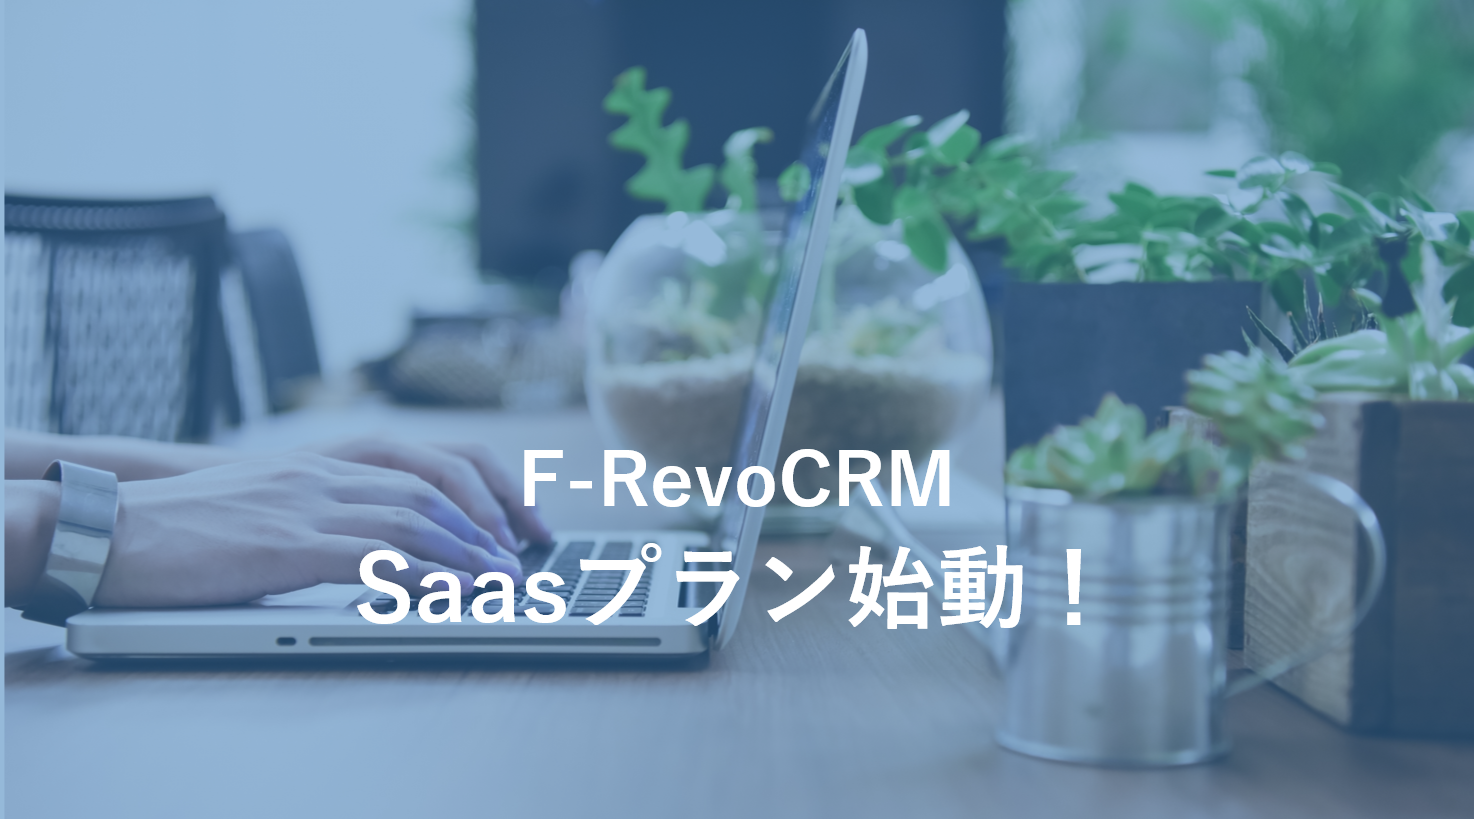 【ニュースリリース】オープンソースCRM「F-RevoCRM」のSaaSプラン提供開始